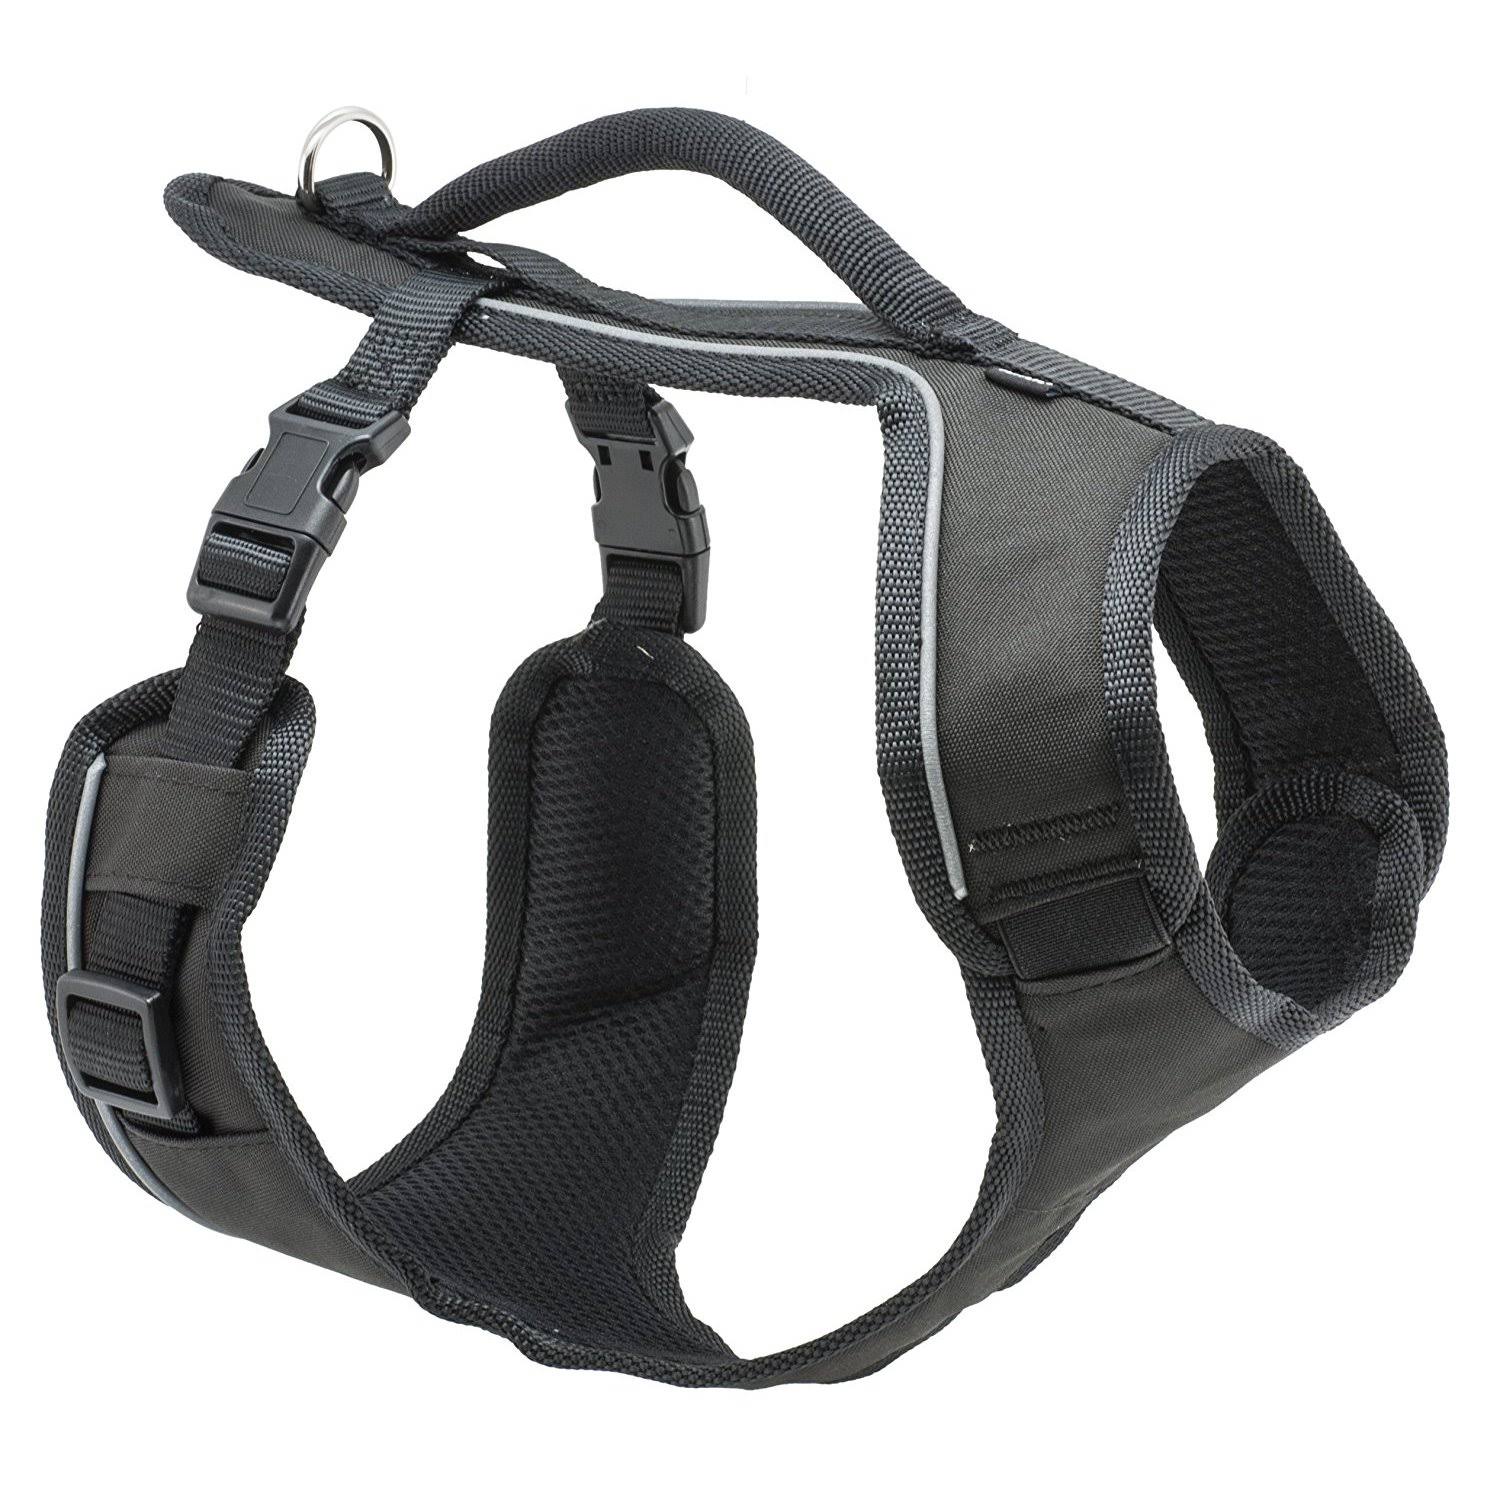 Petsafe EasySport Dog Harness - Large, Black